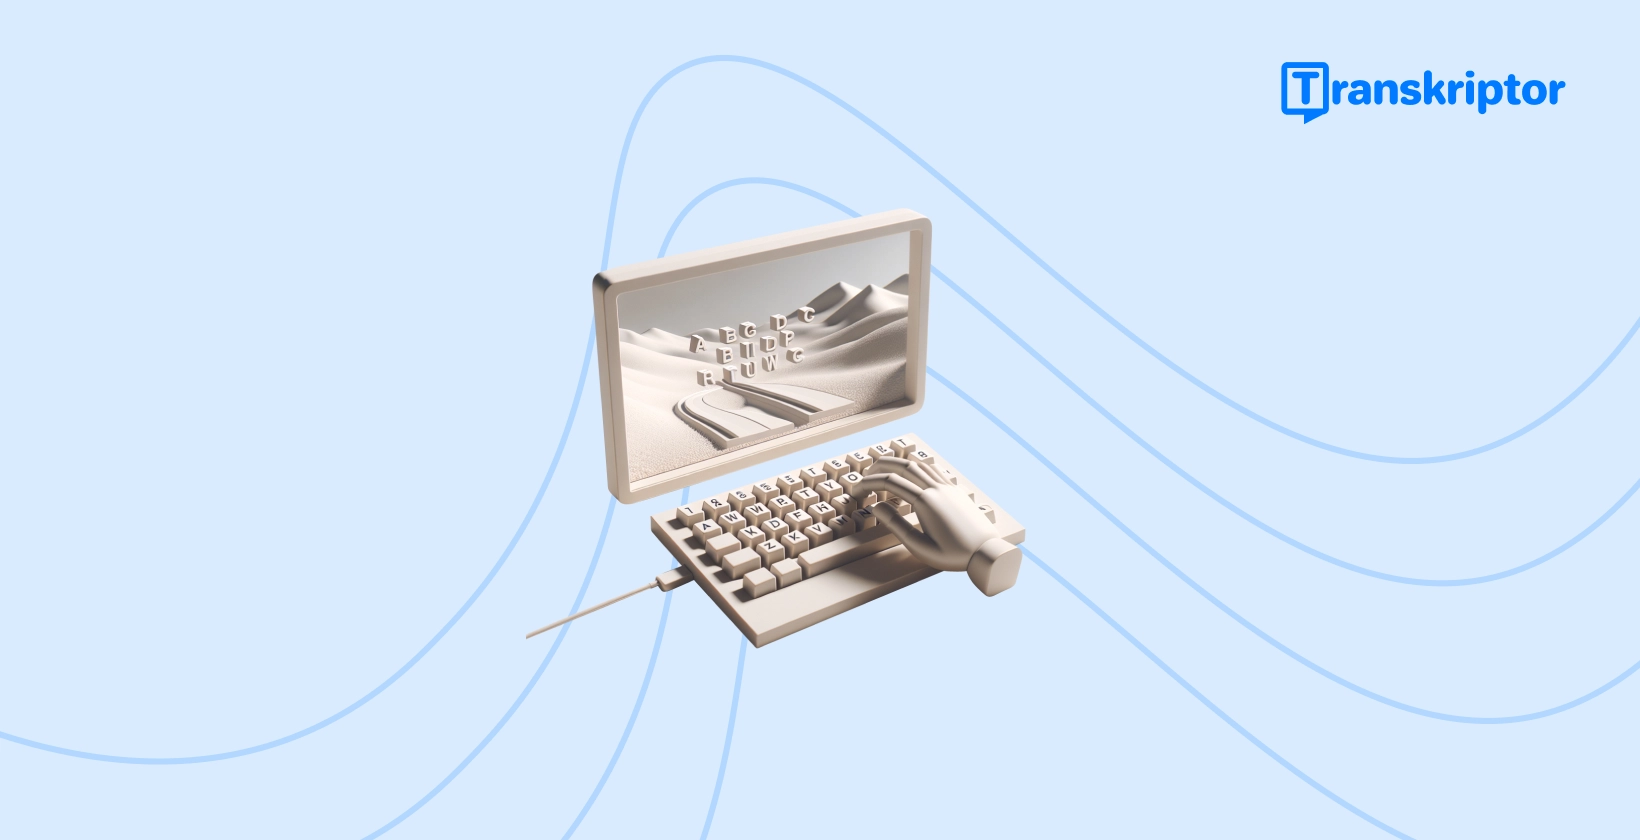 Vintage írógép, amelynek kulcsai tájképet alkotnak a papírtekercsen, képviselve azt a kreatív folyamatot, amelynek során vonzó feliratokat adnak TikTok videókhoz.